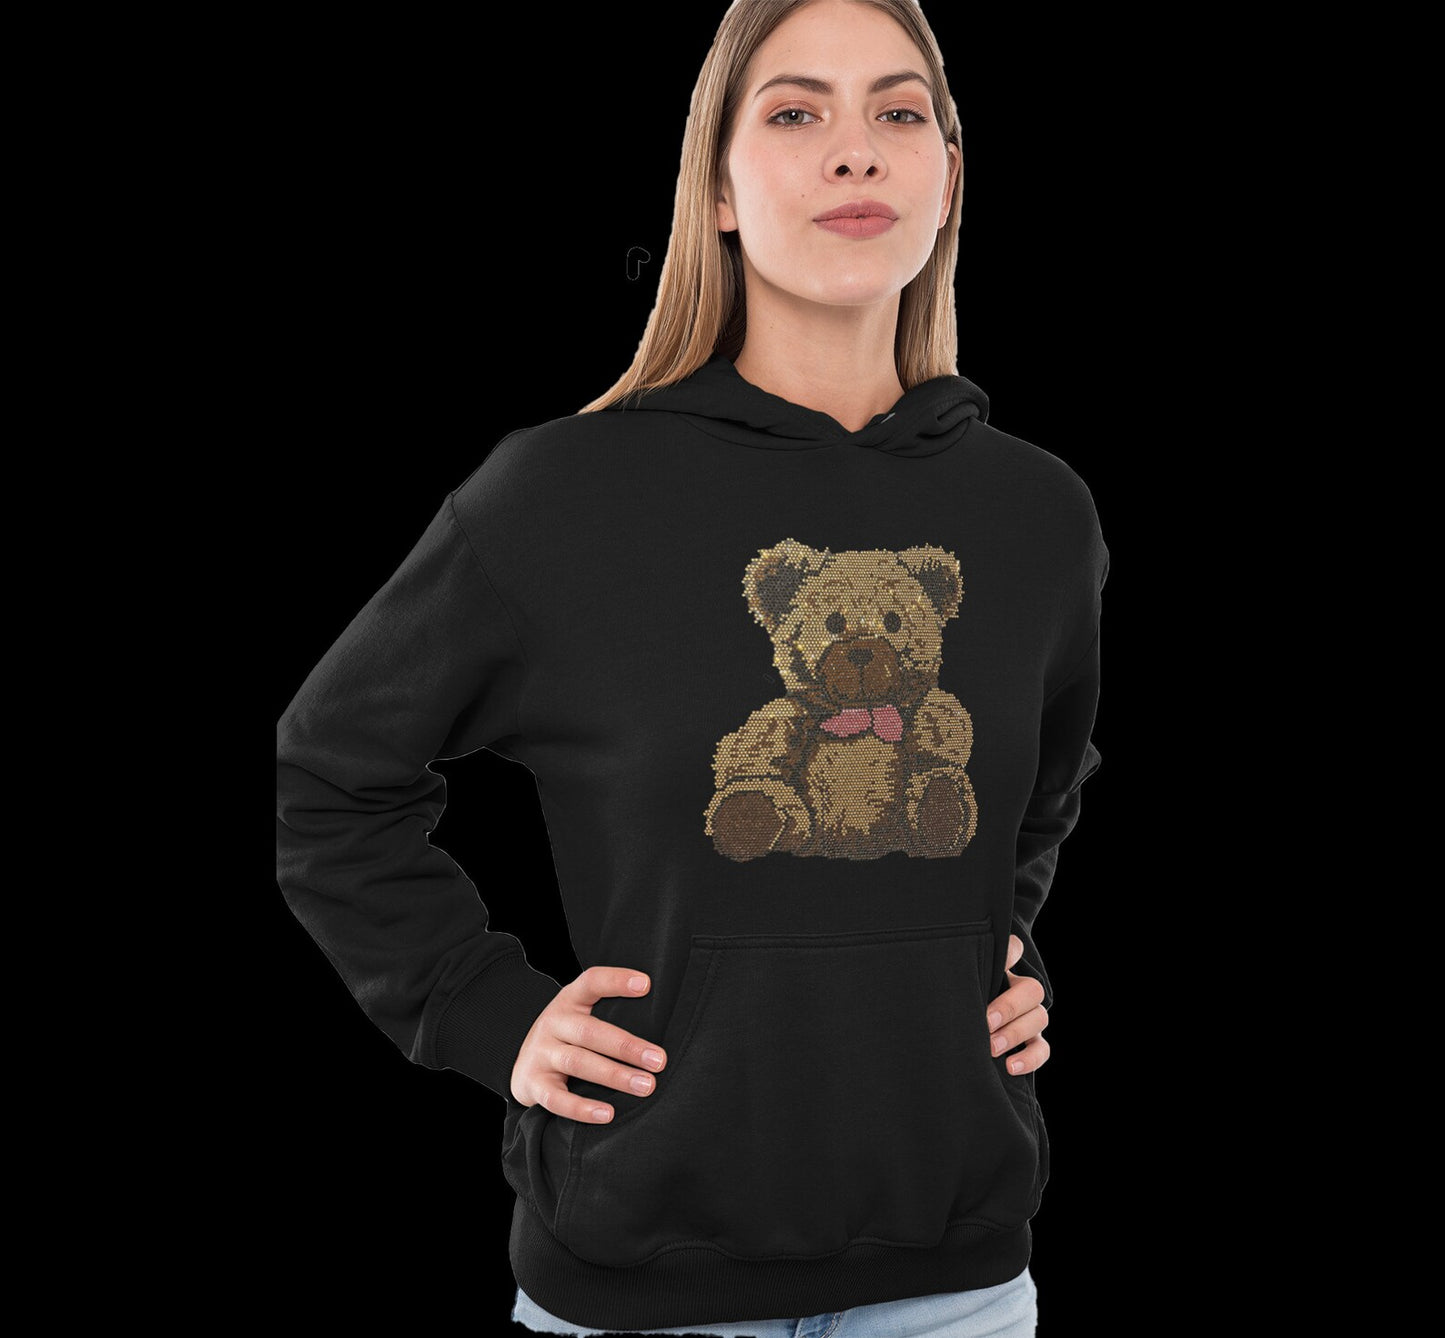 Teddy bear black hoodie , rhinestone hoodies , bling bling sweatshirts , cute teddy bear hoodie clothing , crystal rhinestone sweatshirt